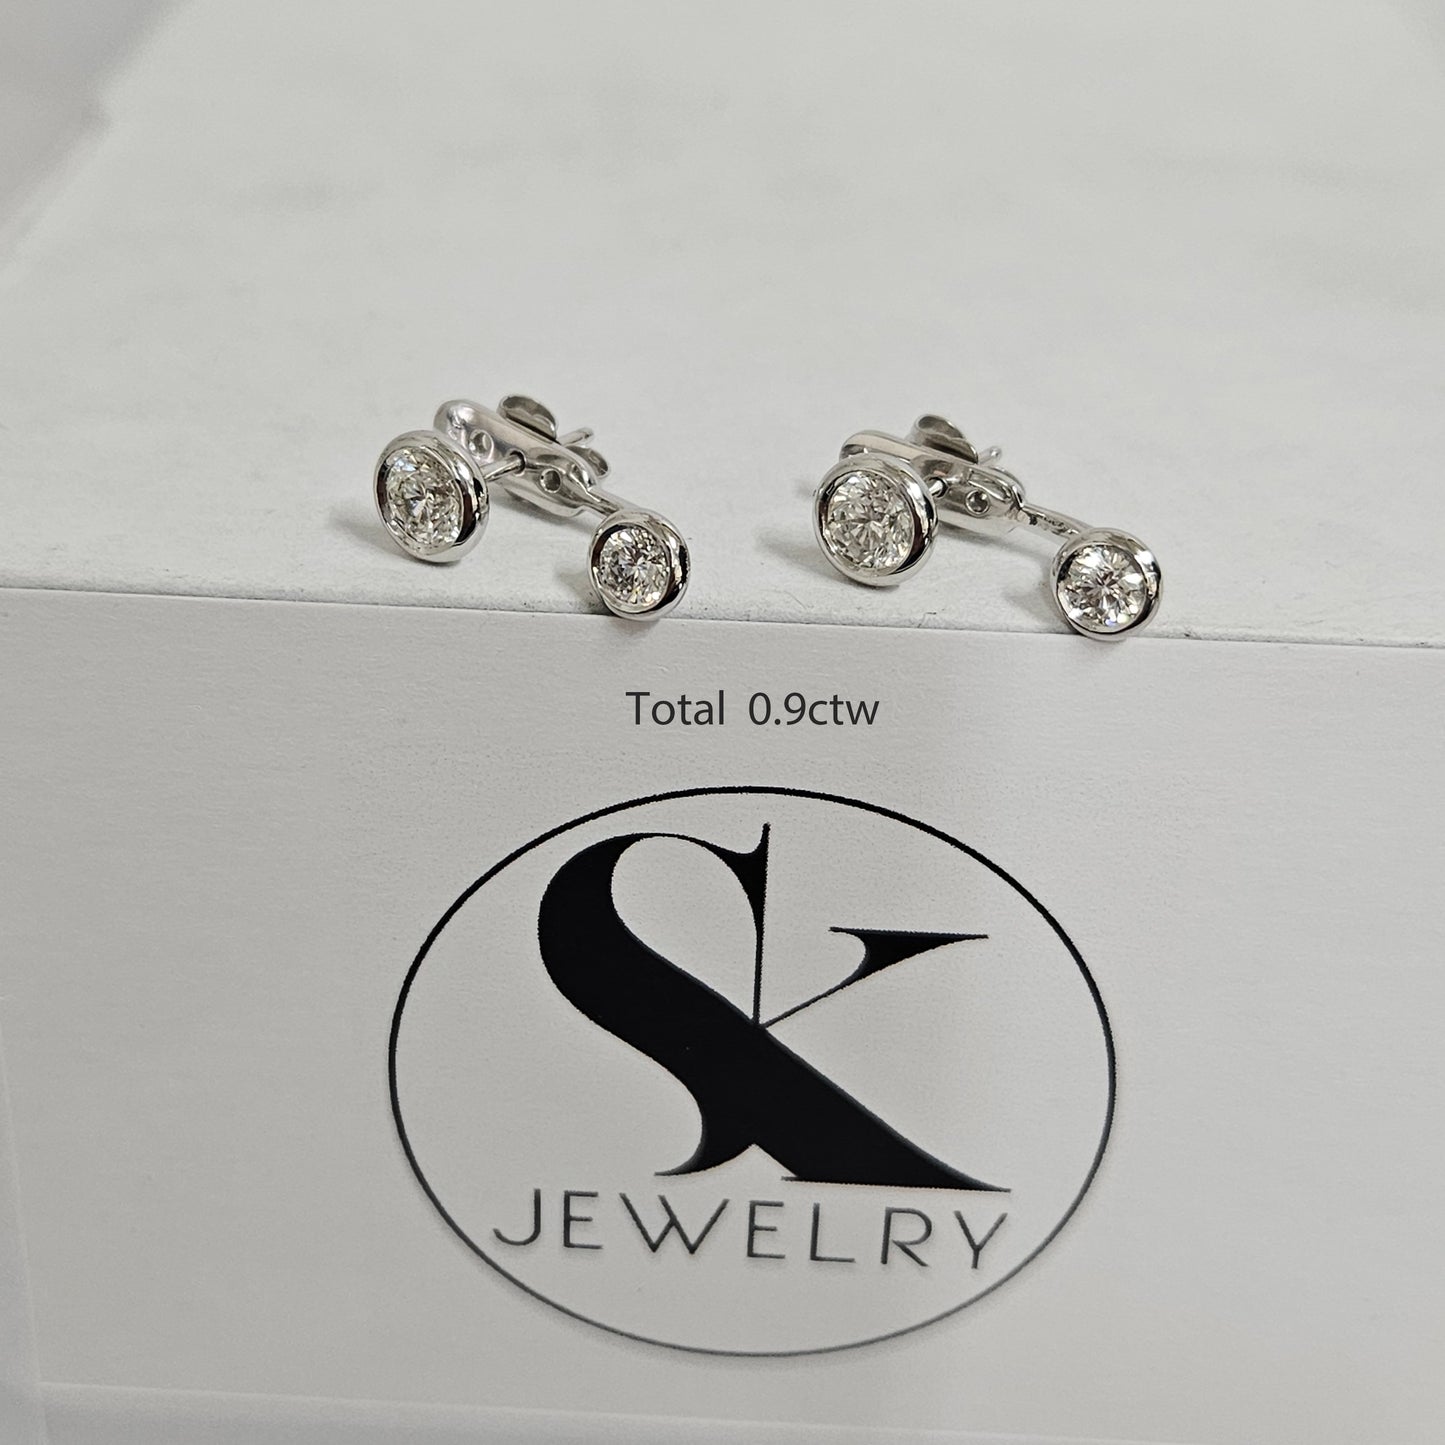 Diamond Bezel Set Stud Earrings/Diamond Earrings/Diamond Solitaire Earrings/Minimalist Diamond Stud/Bridesmaid Wedding Gift/Single or Pair